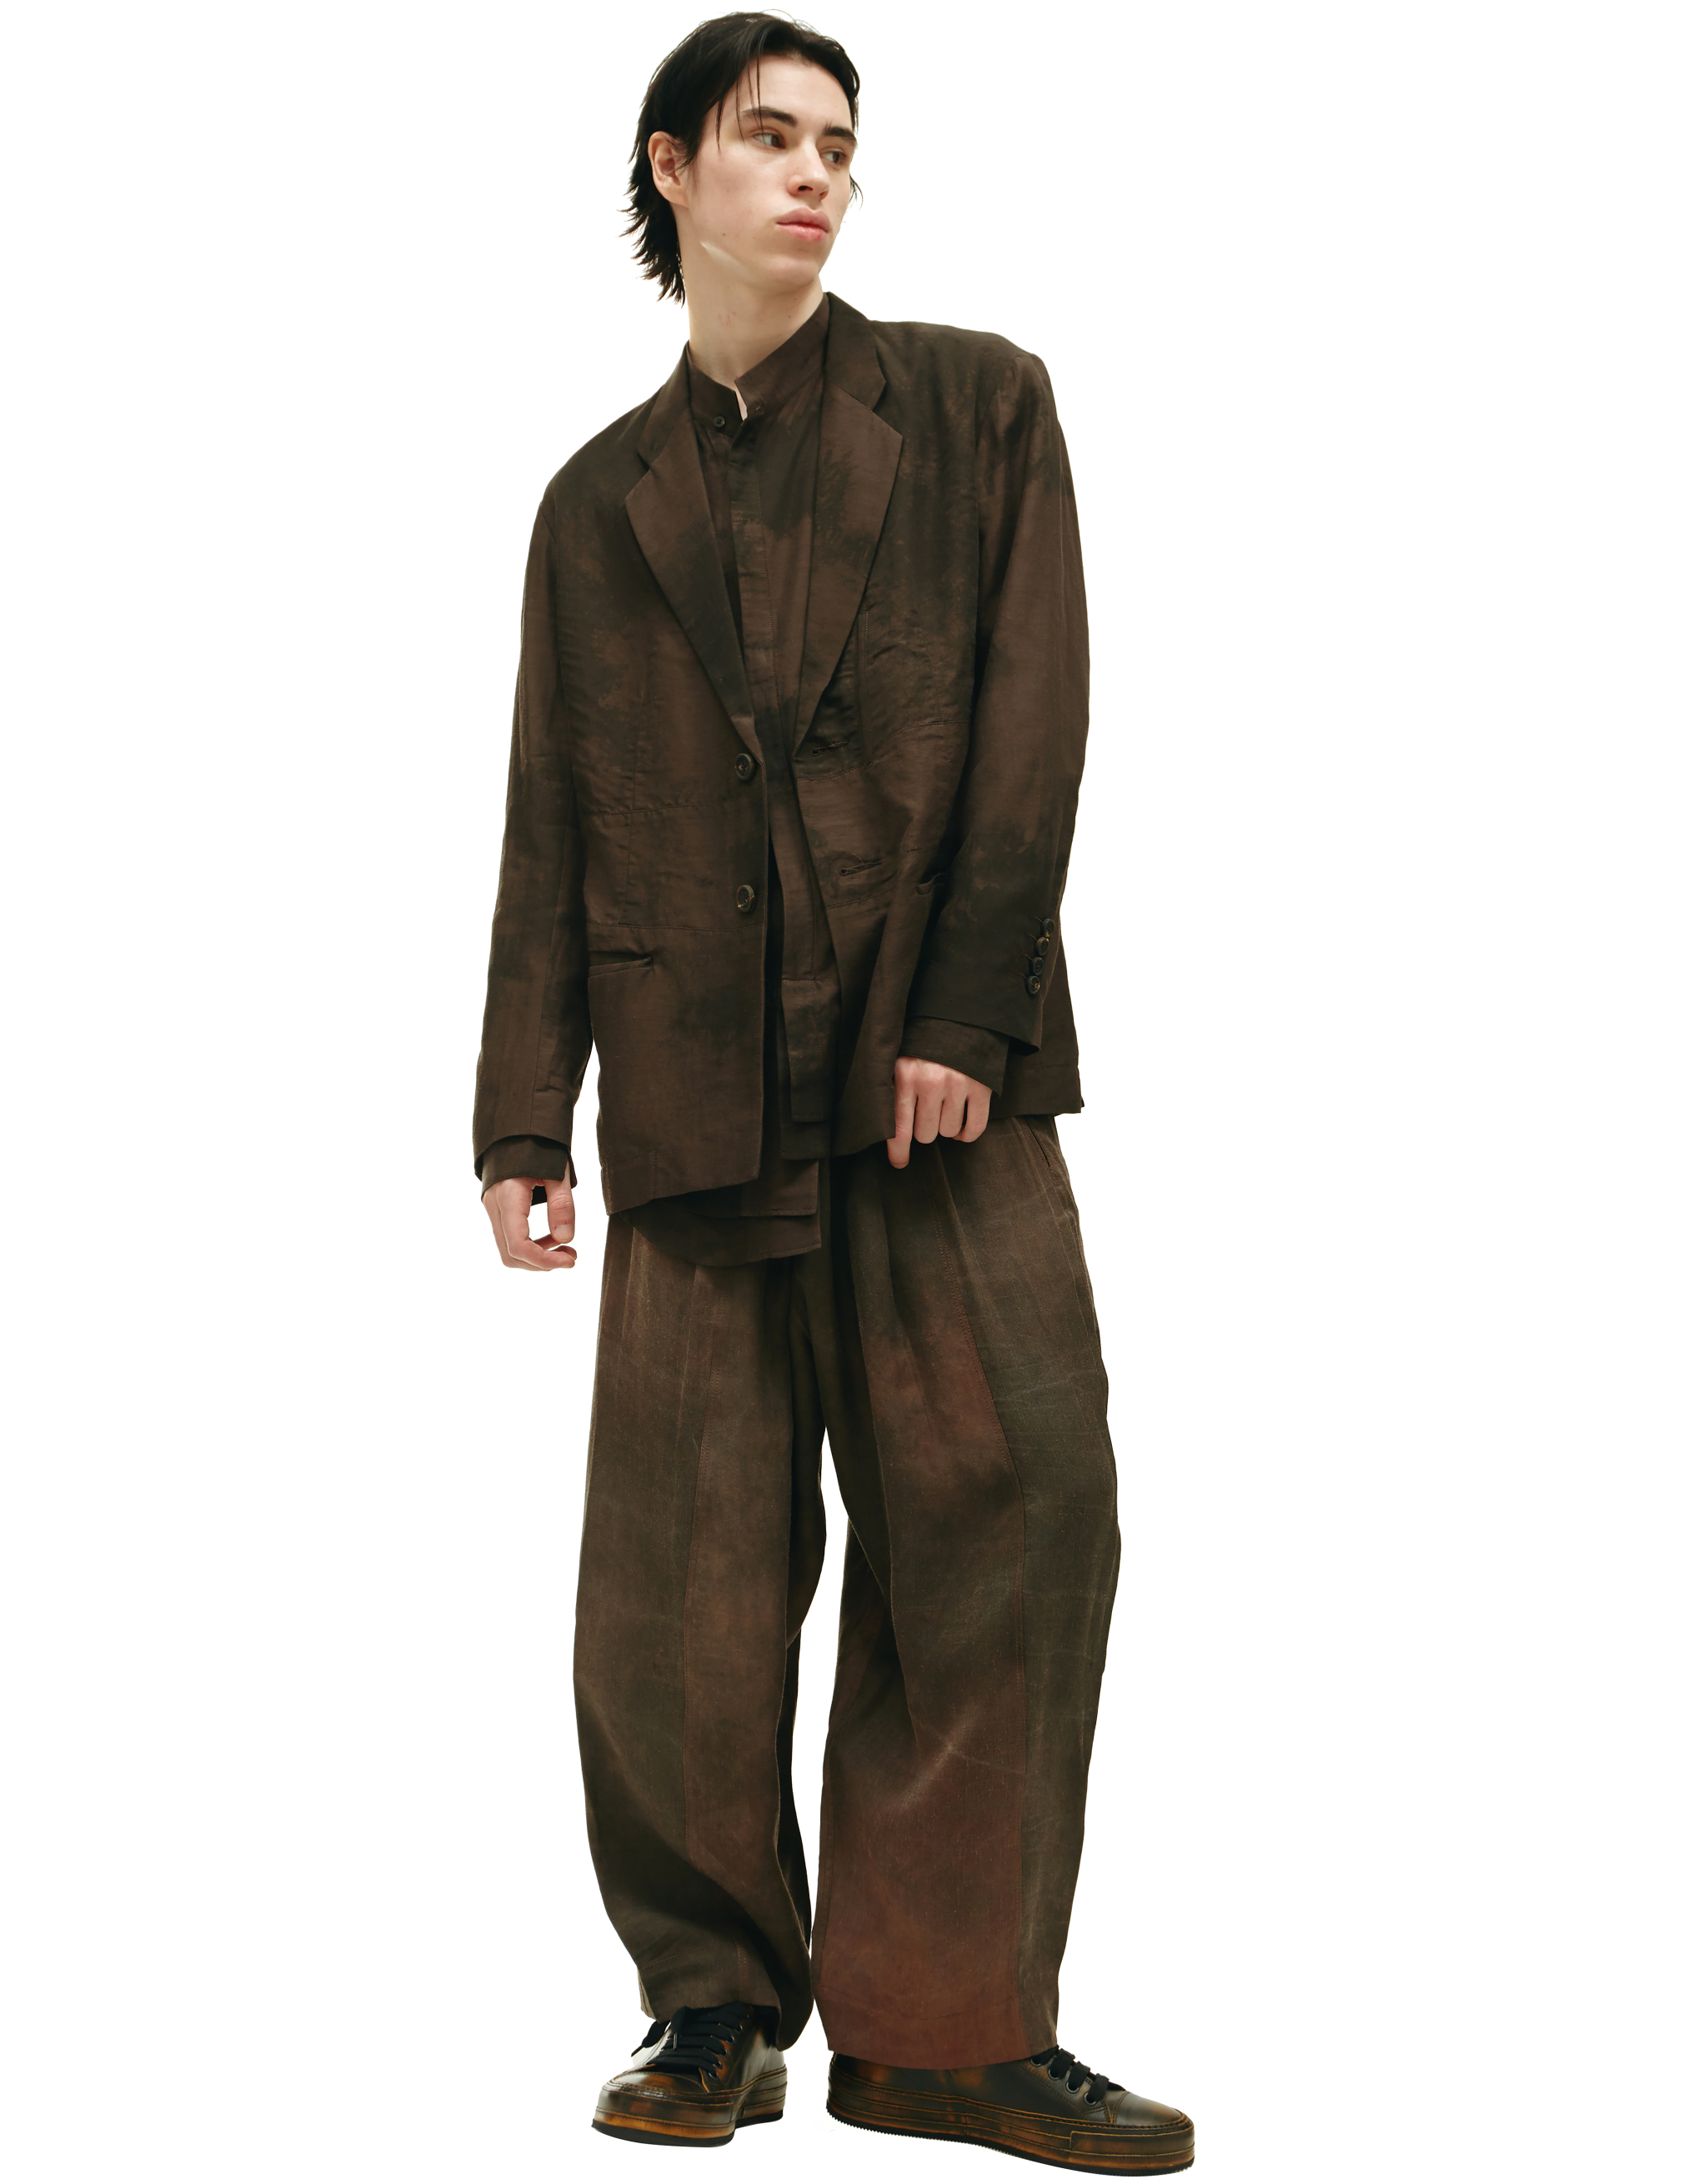 Однобортный пиджак на двух пуговицах Ziggy Chen 0M2220905, размер 52;50;48